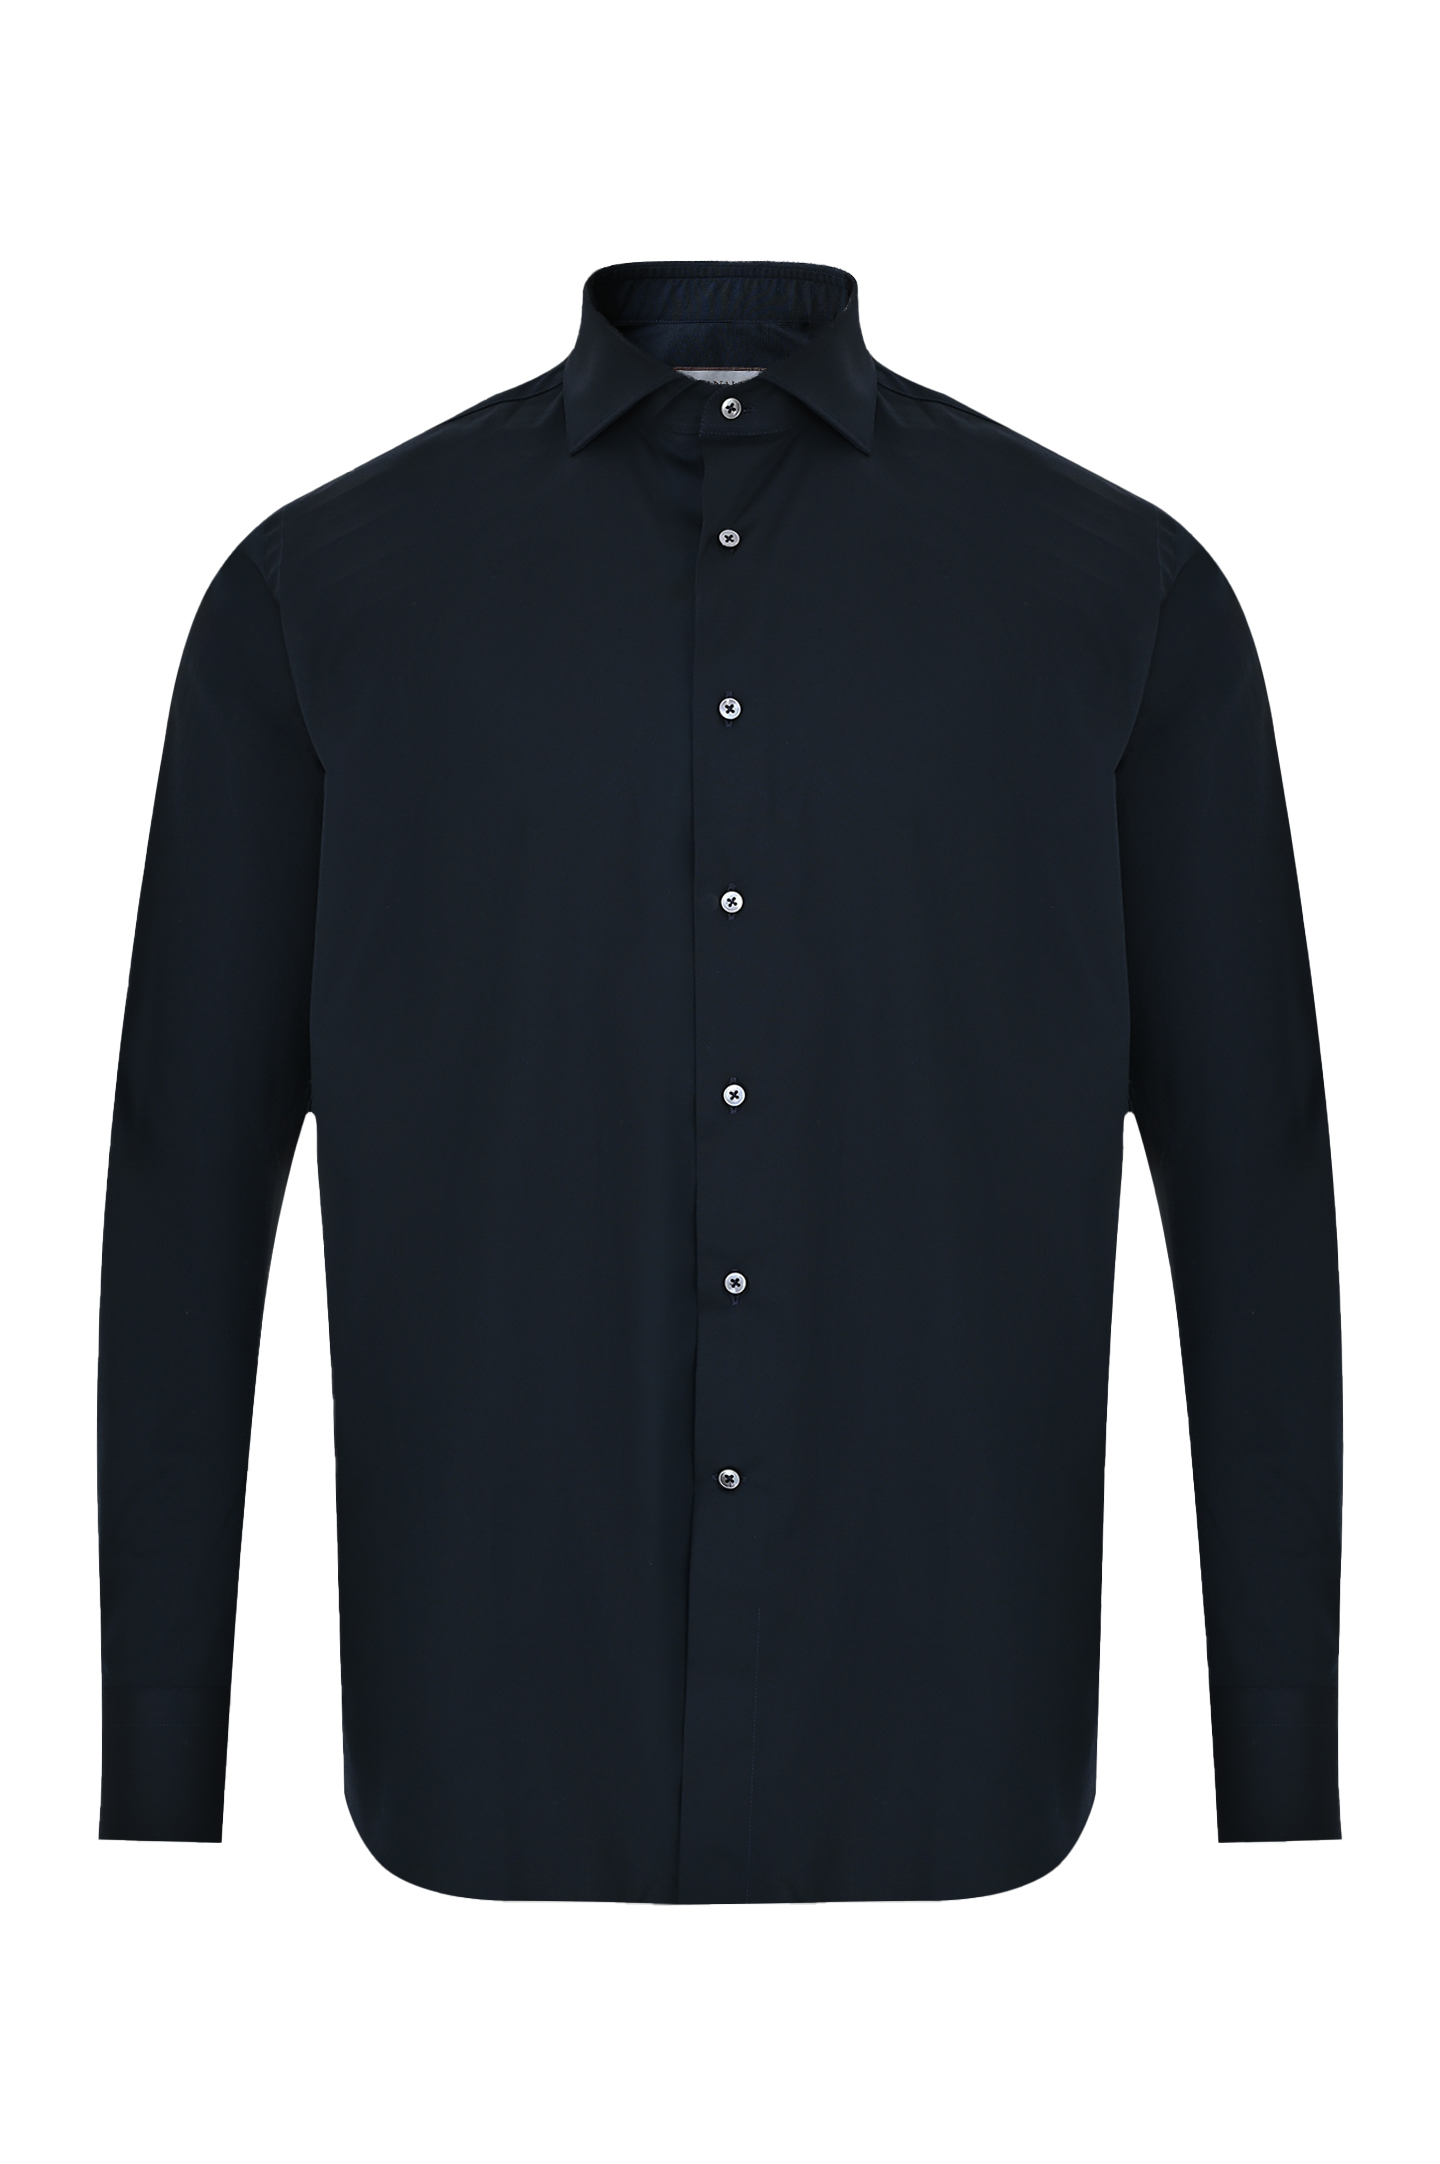 Рубашка из хлопка и эластана CANALI GD02832 7C3/1, цвет: Темно-синий, Мужской